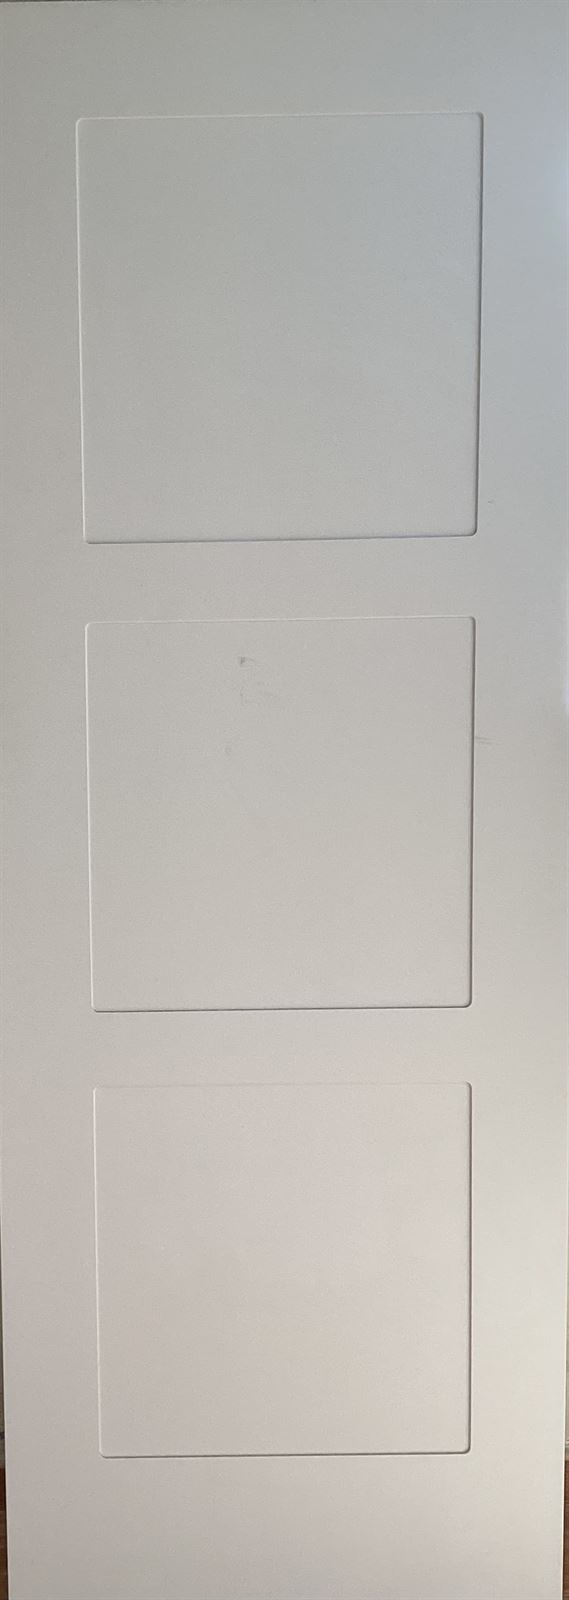 Puerta lacada blanca modelo 2 - Imagen 1